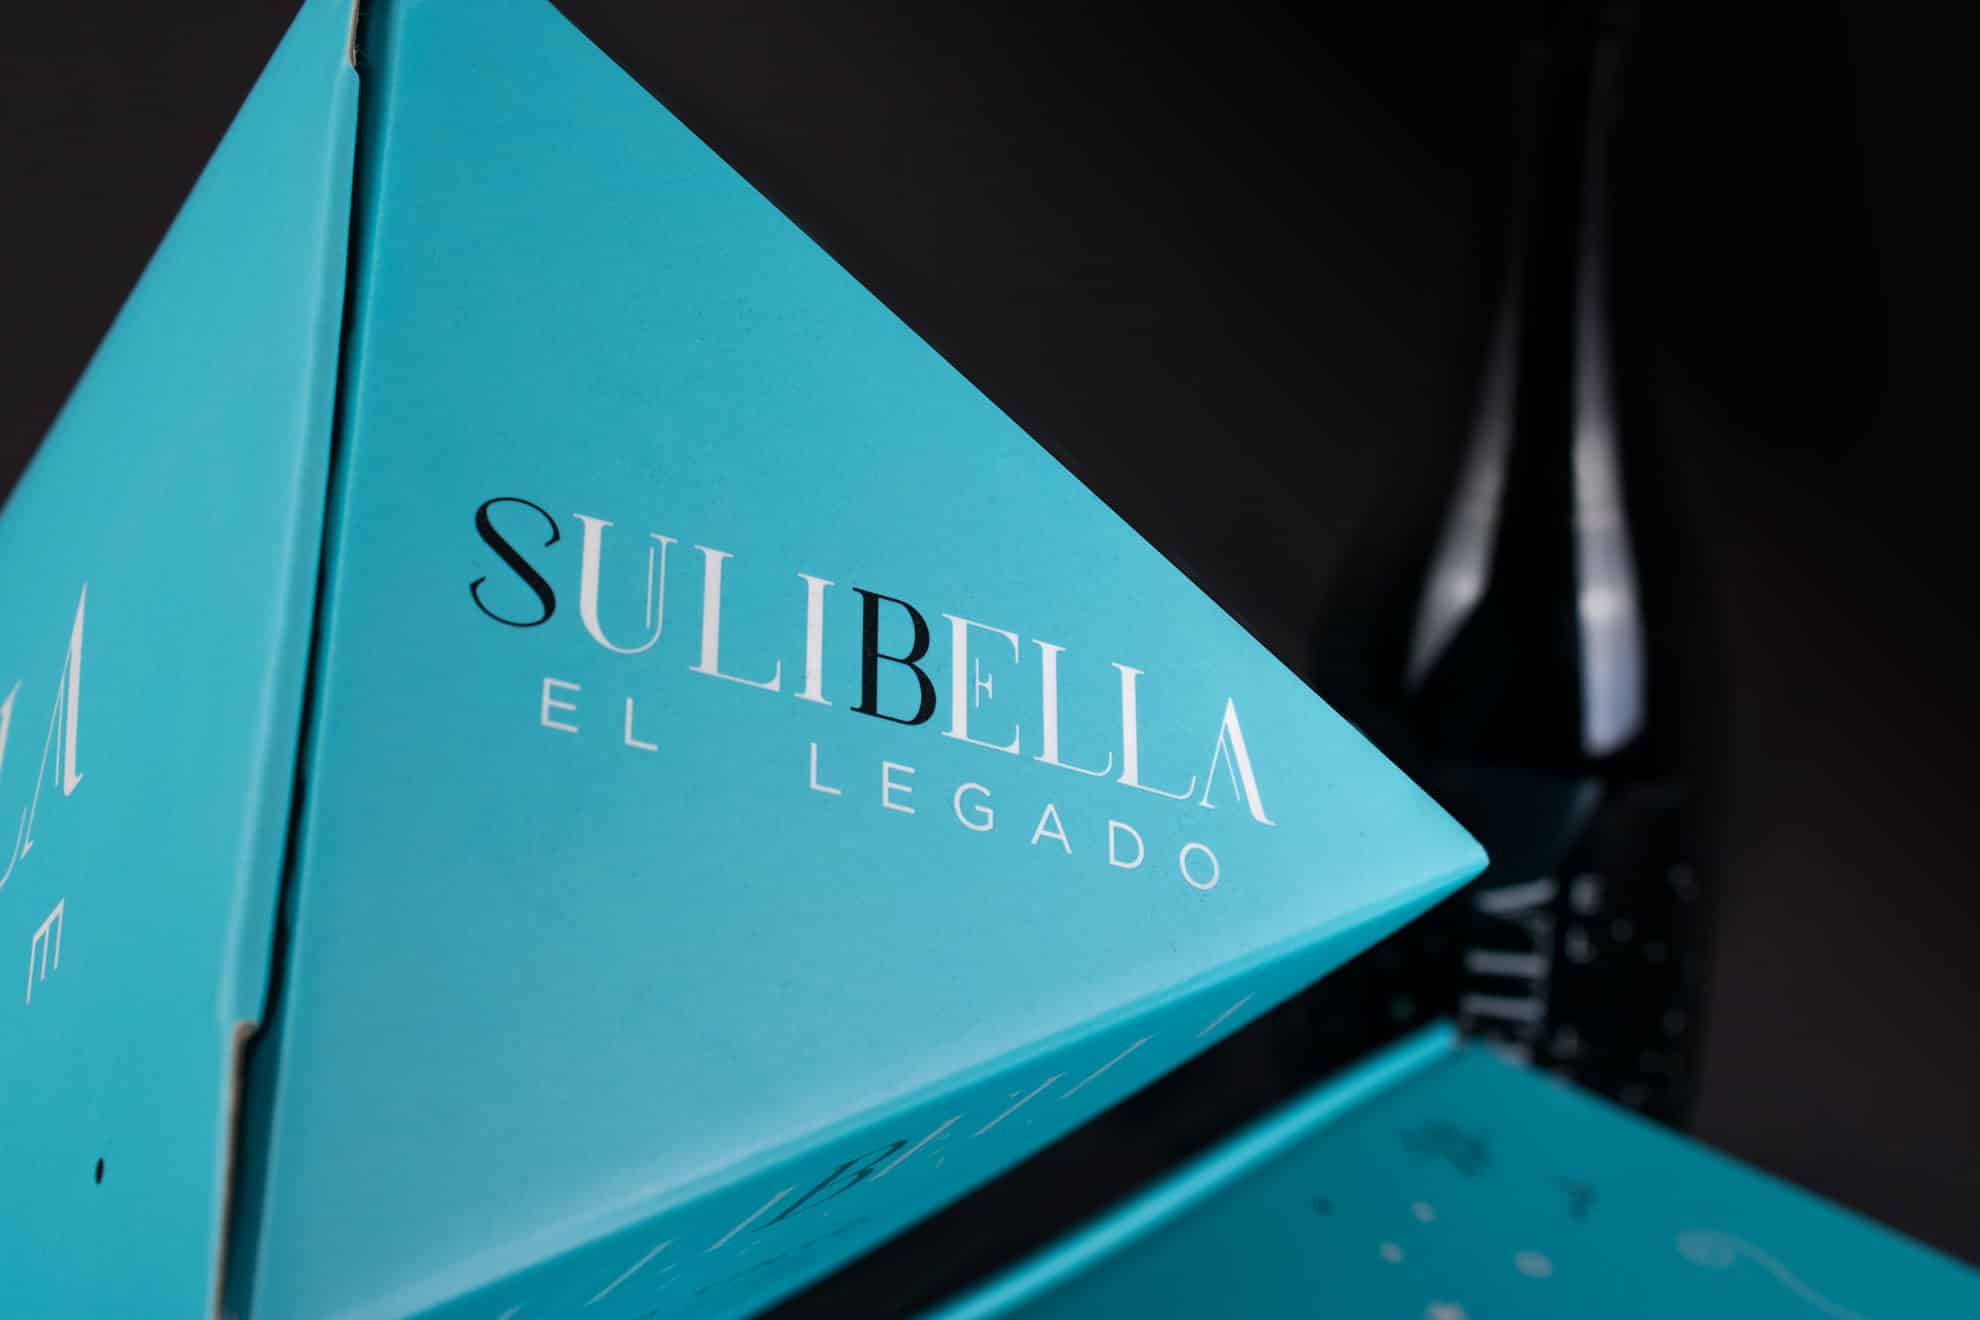 Packaging vino submarino Sulibella